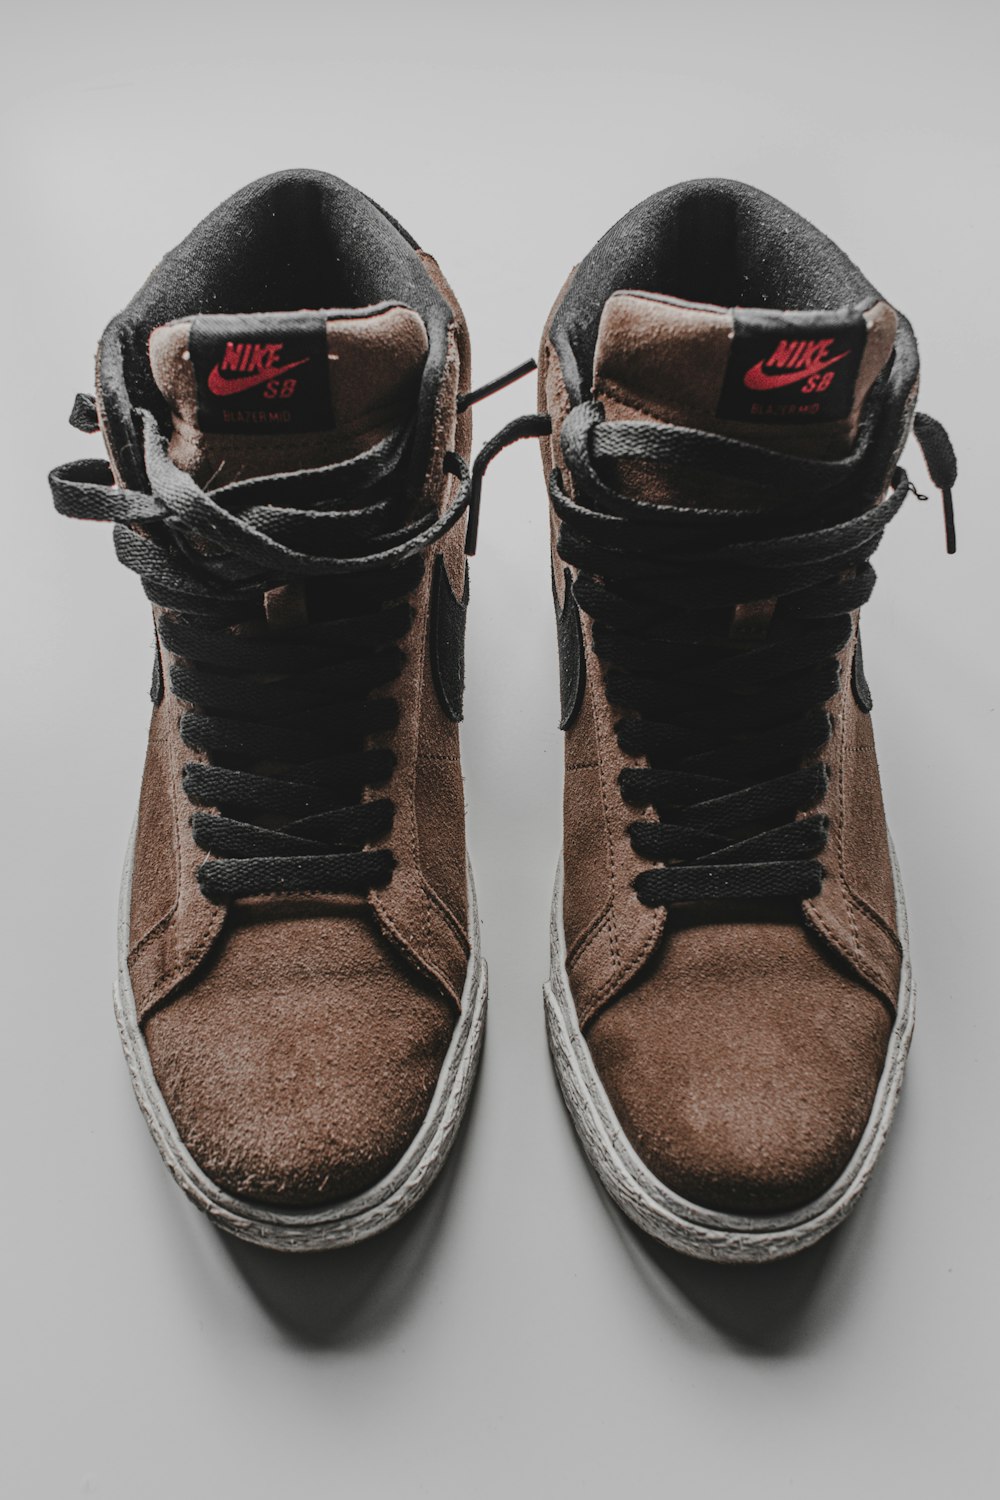 Zapatillas Nike marrones y negras